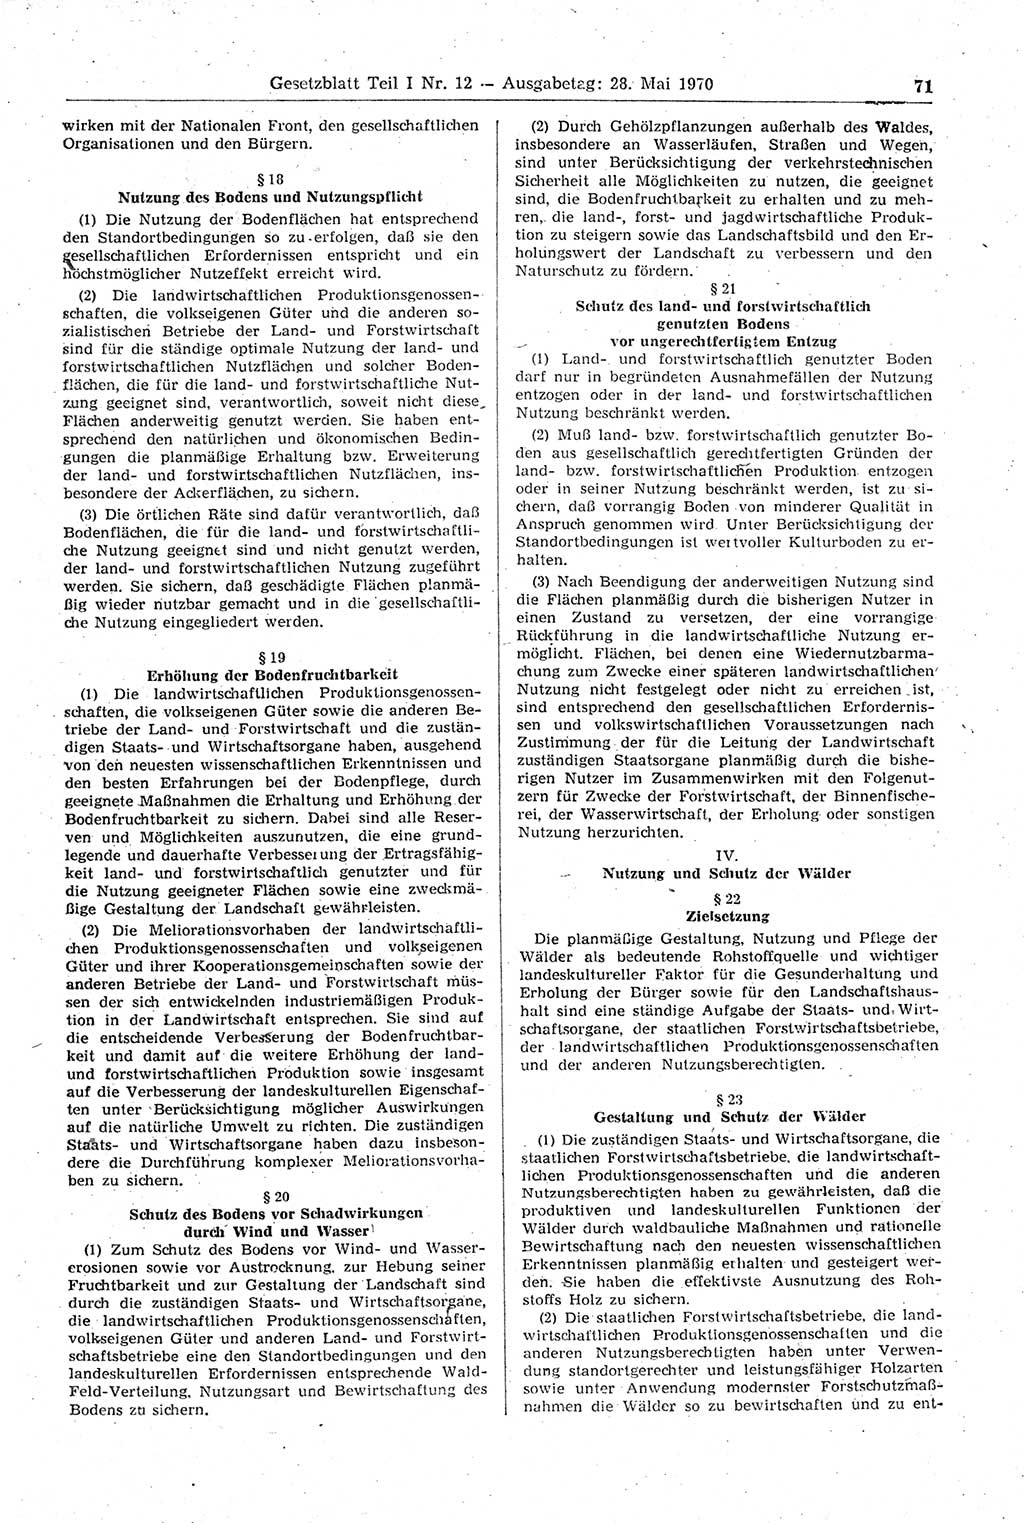 Gesetzblatt (GBl.) der Deutschen Demokratischen Republik (DDR) Teil Ⅰ 1970, Seite 71 (GBl. DDR Ⅰ 1970, S. 71)